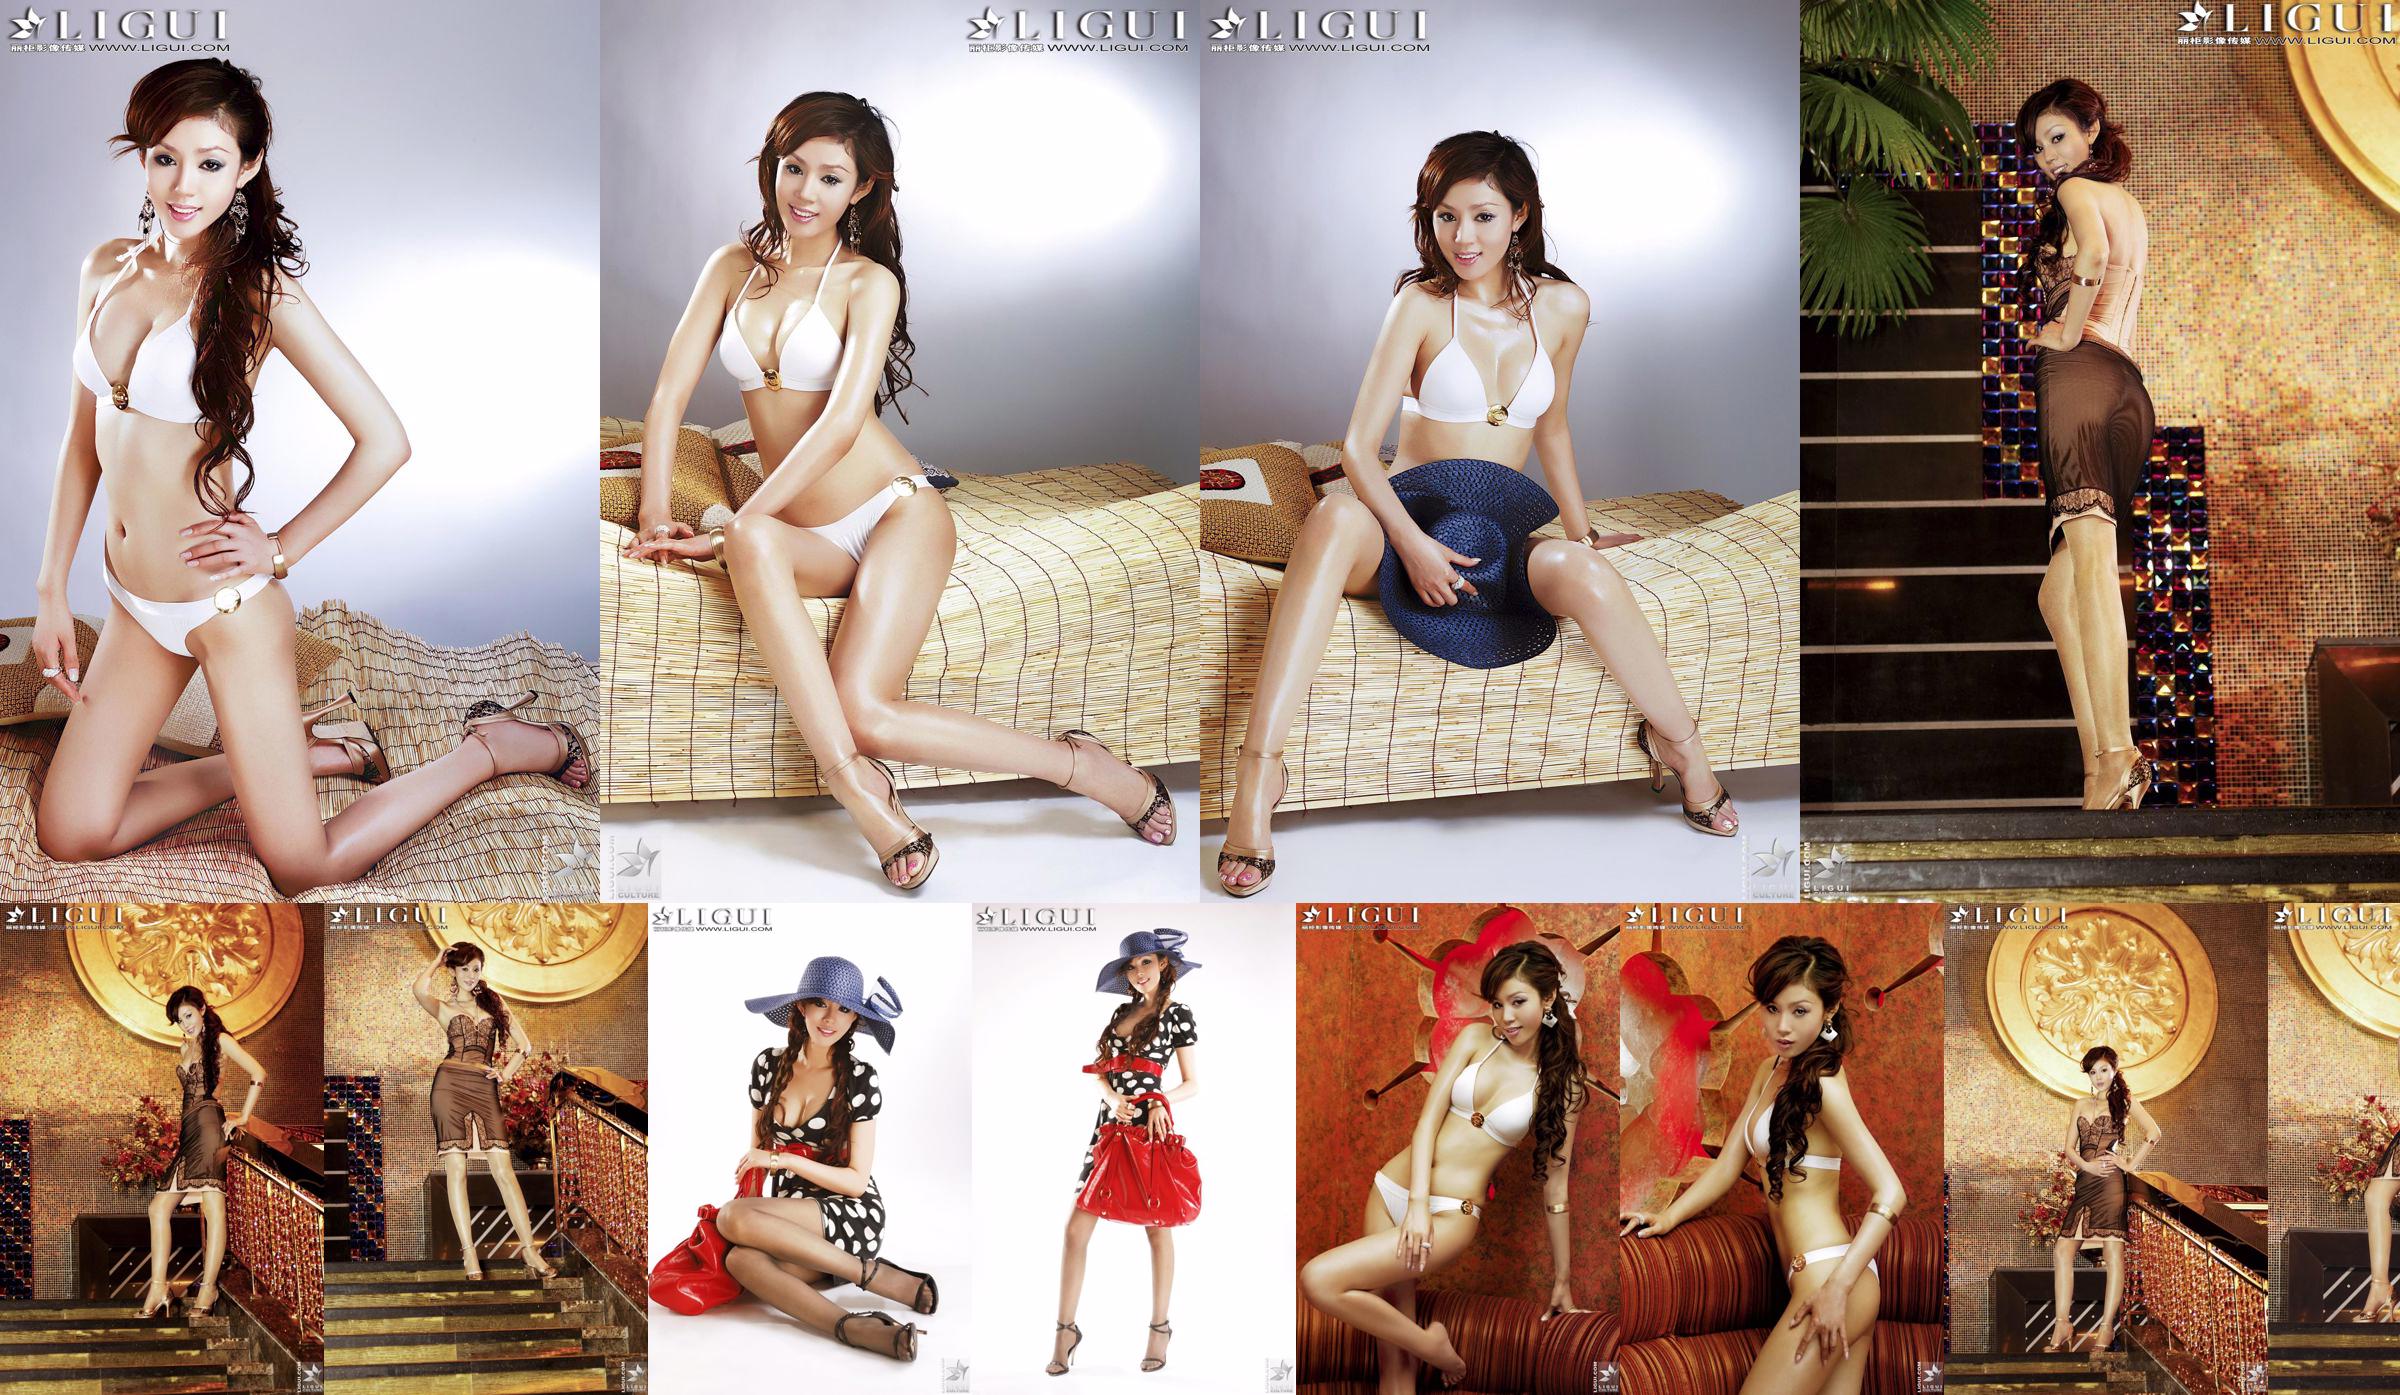 [丽 柜 LiGui] "Bikini + Robe" du modèle Yao Jinjin, belles jambes et pieds soyeux Photo Picture No.016c35 Page 3